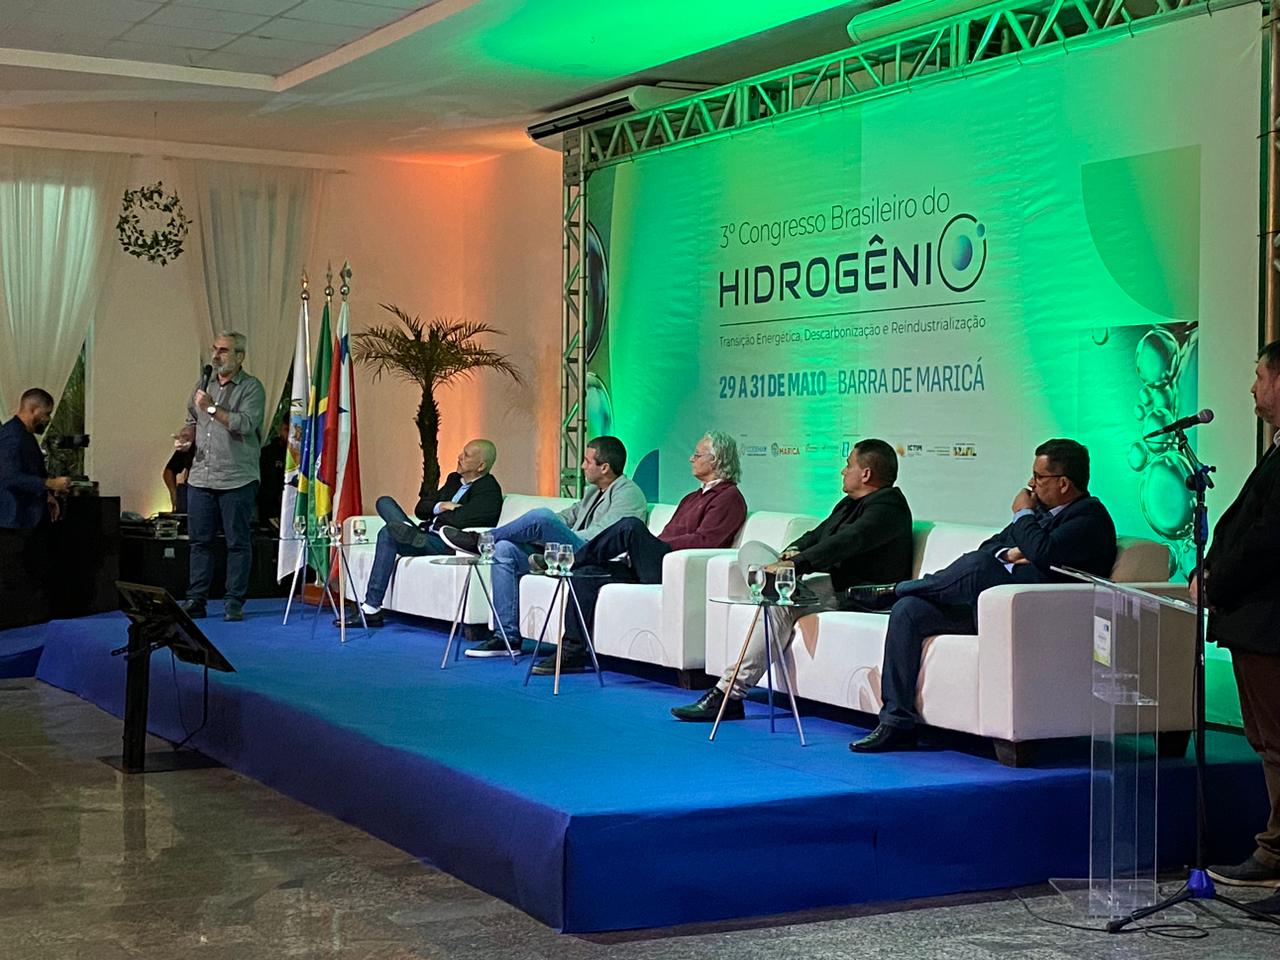 3º Congresso Brasileiro do Hidrogênio será aberto dia 29 de maio em Maricá